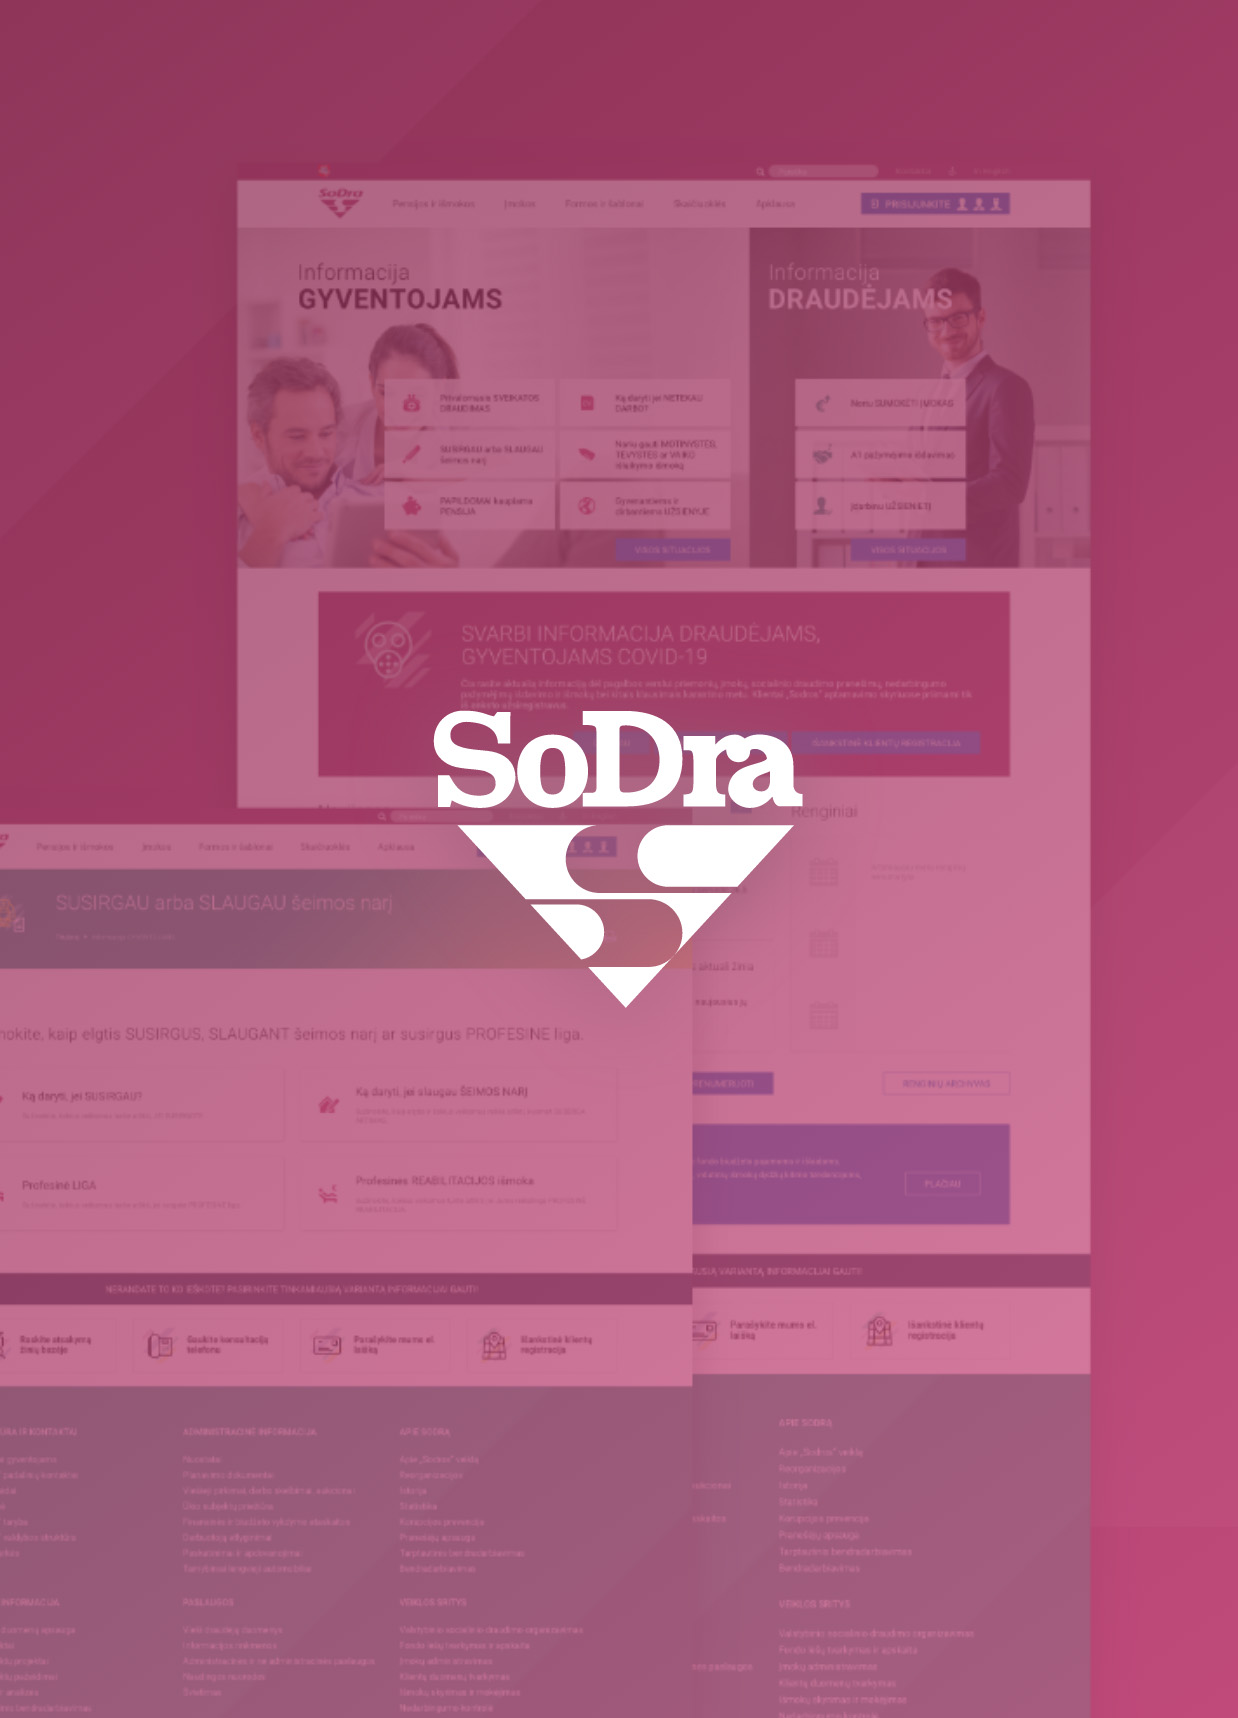 SODRA interneto svetainė